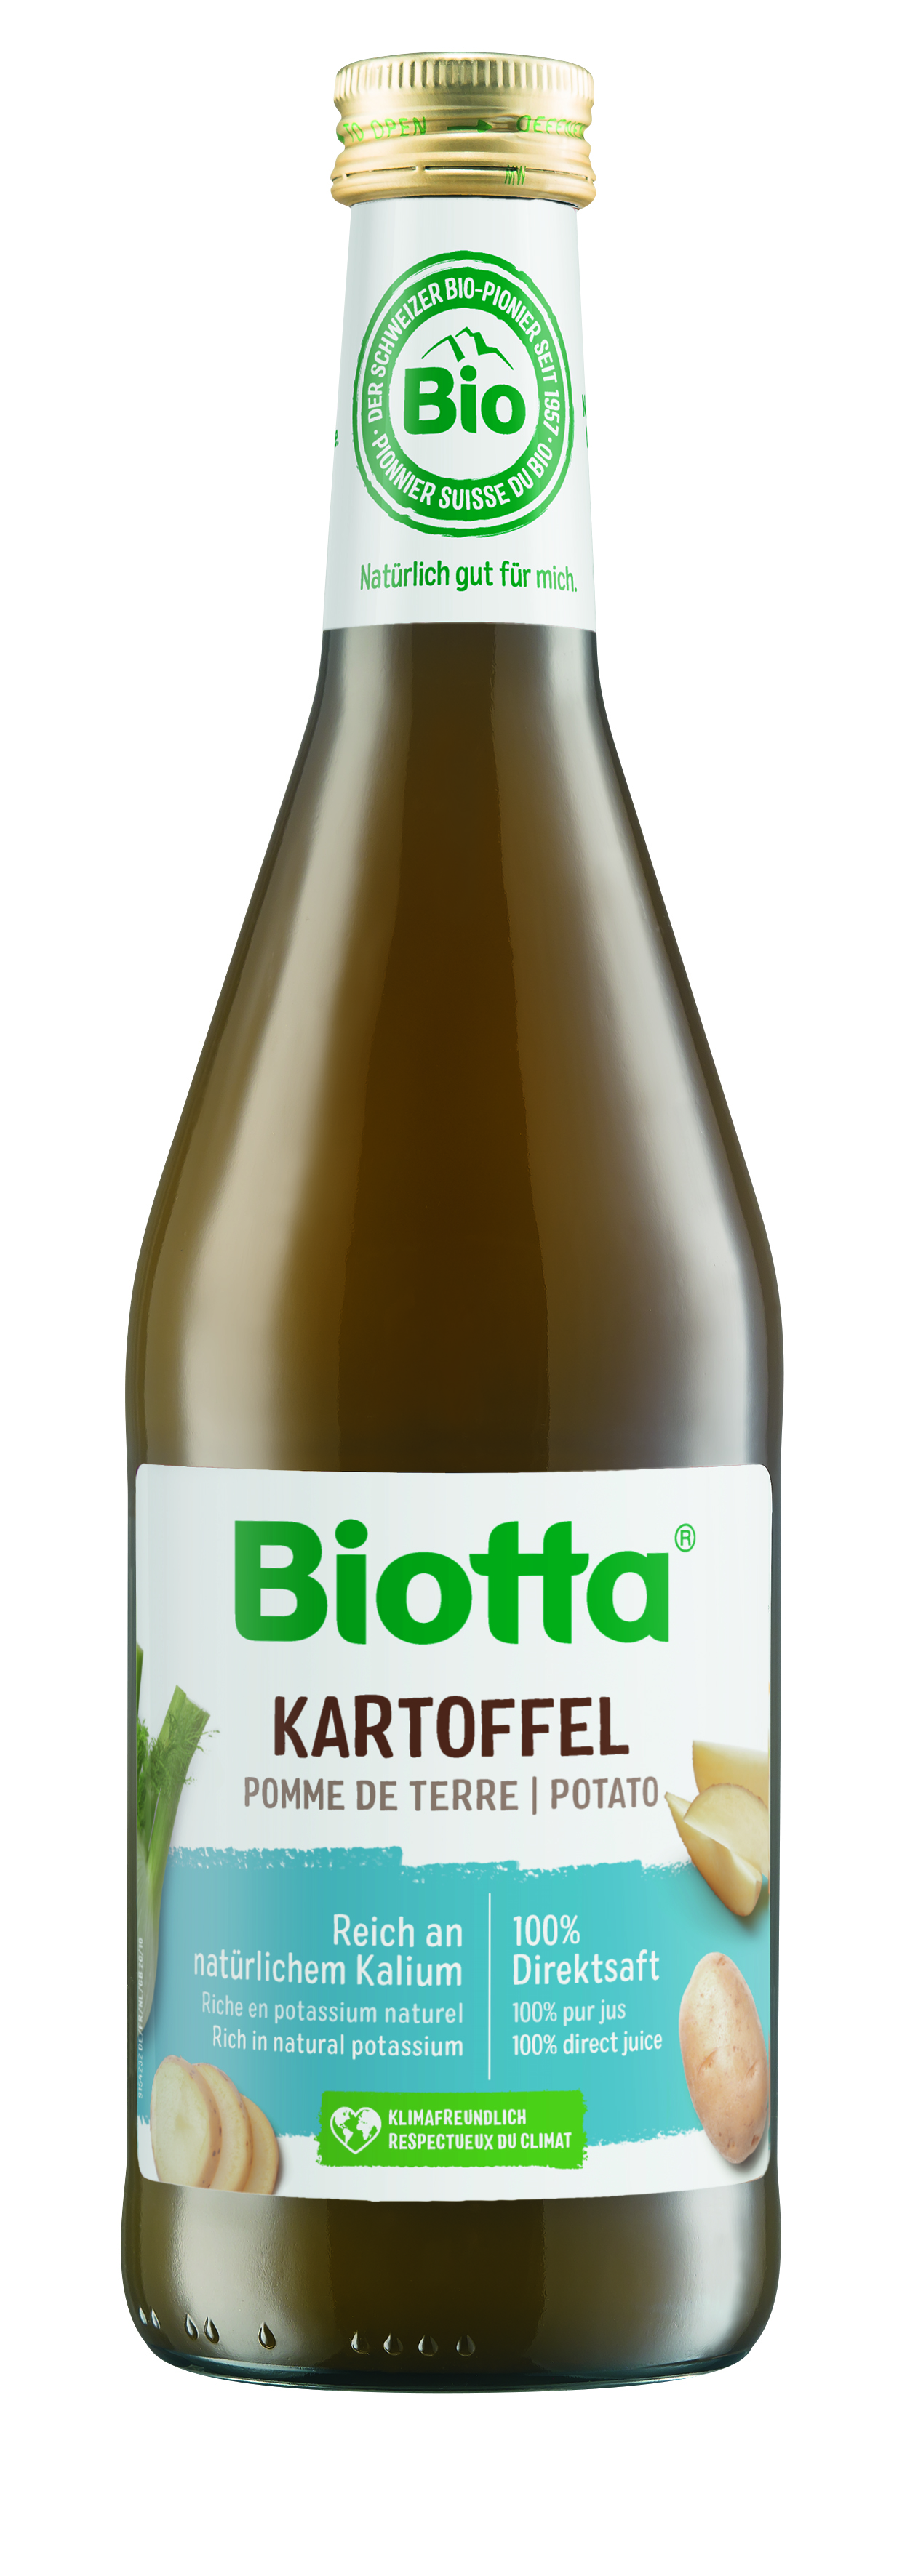 Biotta zemiaková šťava 7 kartónov - cena za 1 ks 4,29€ s DPH